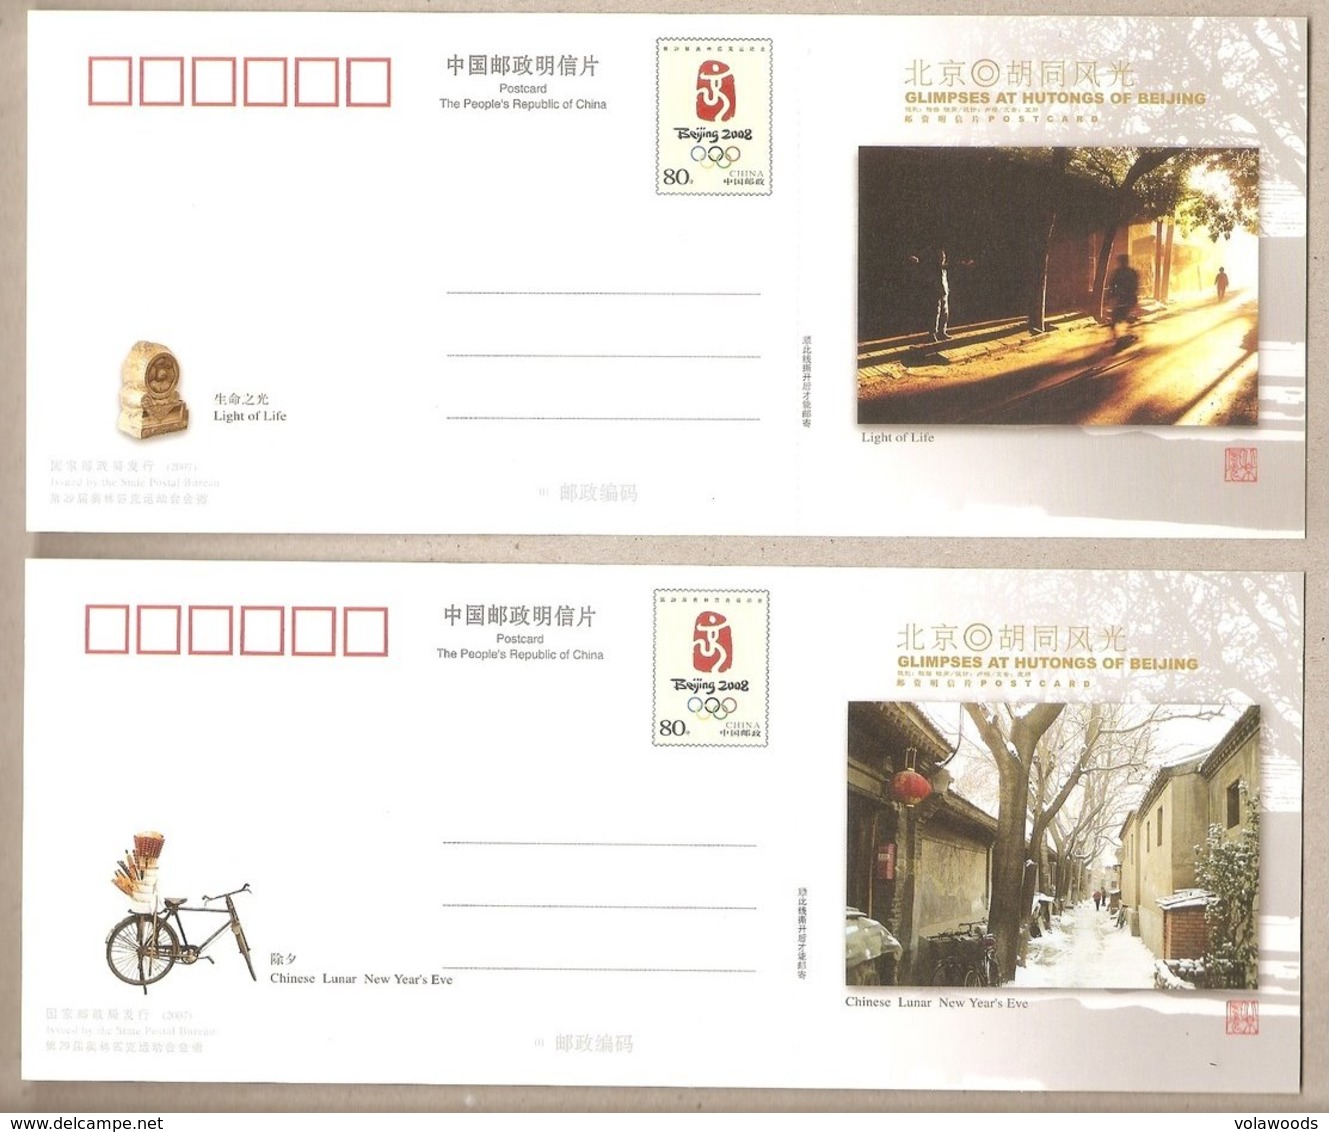 Cina - serie completa di 10 cartoline postali nuove in astuccio contenitore: Squarci dei vicoli di Pechino - 2007